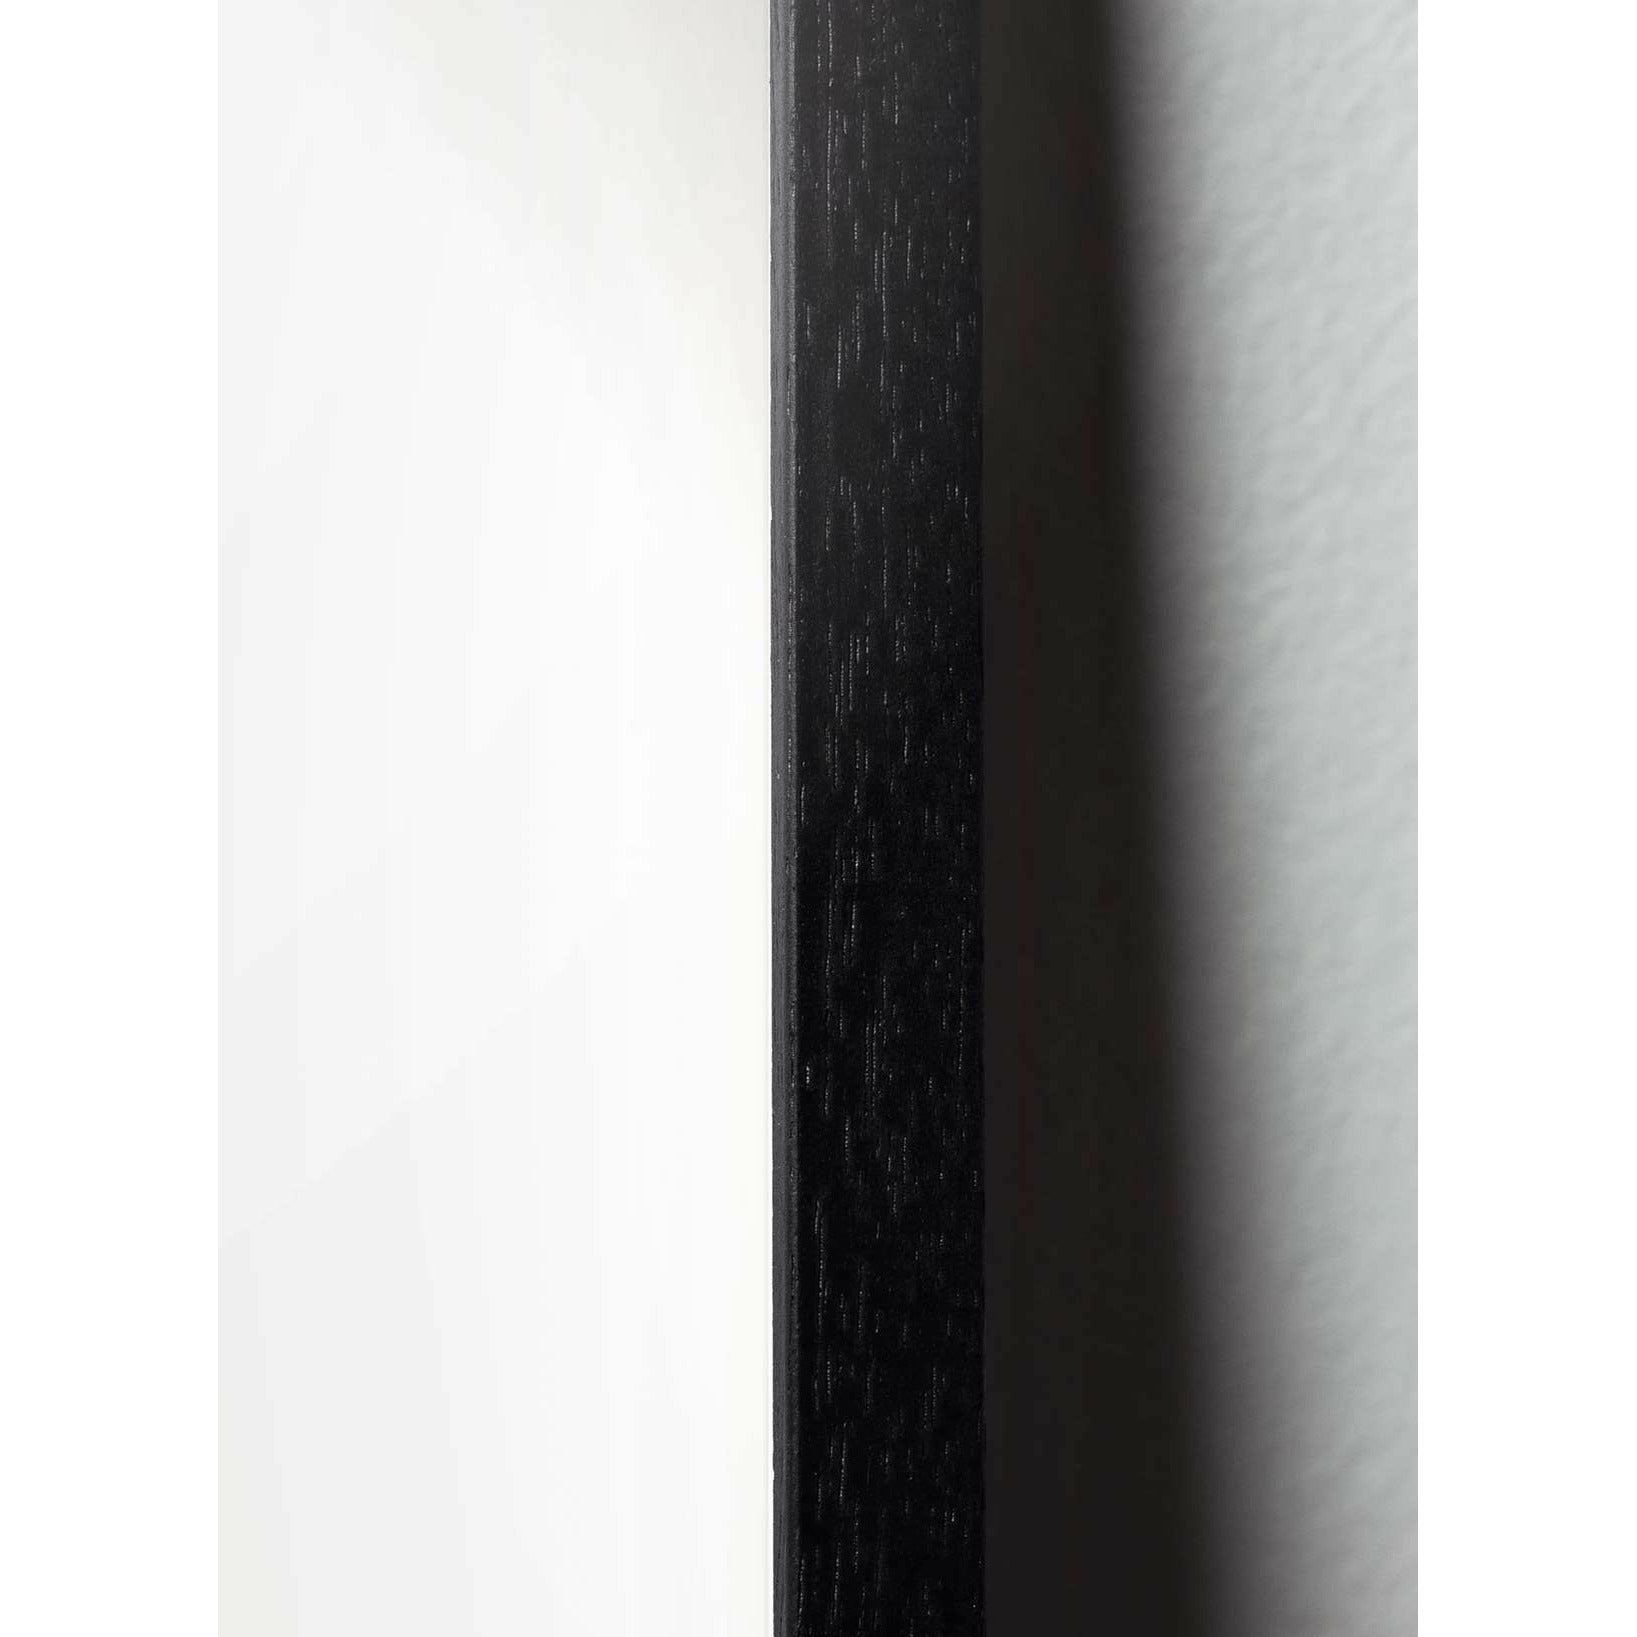 Brainchild Tallkotte Line Affisch, ram i svart lackerat trä 30x40 cm, vit bakgrund